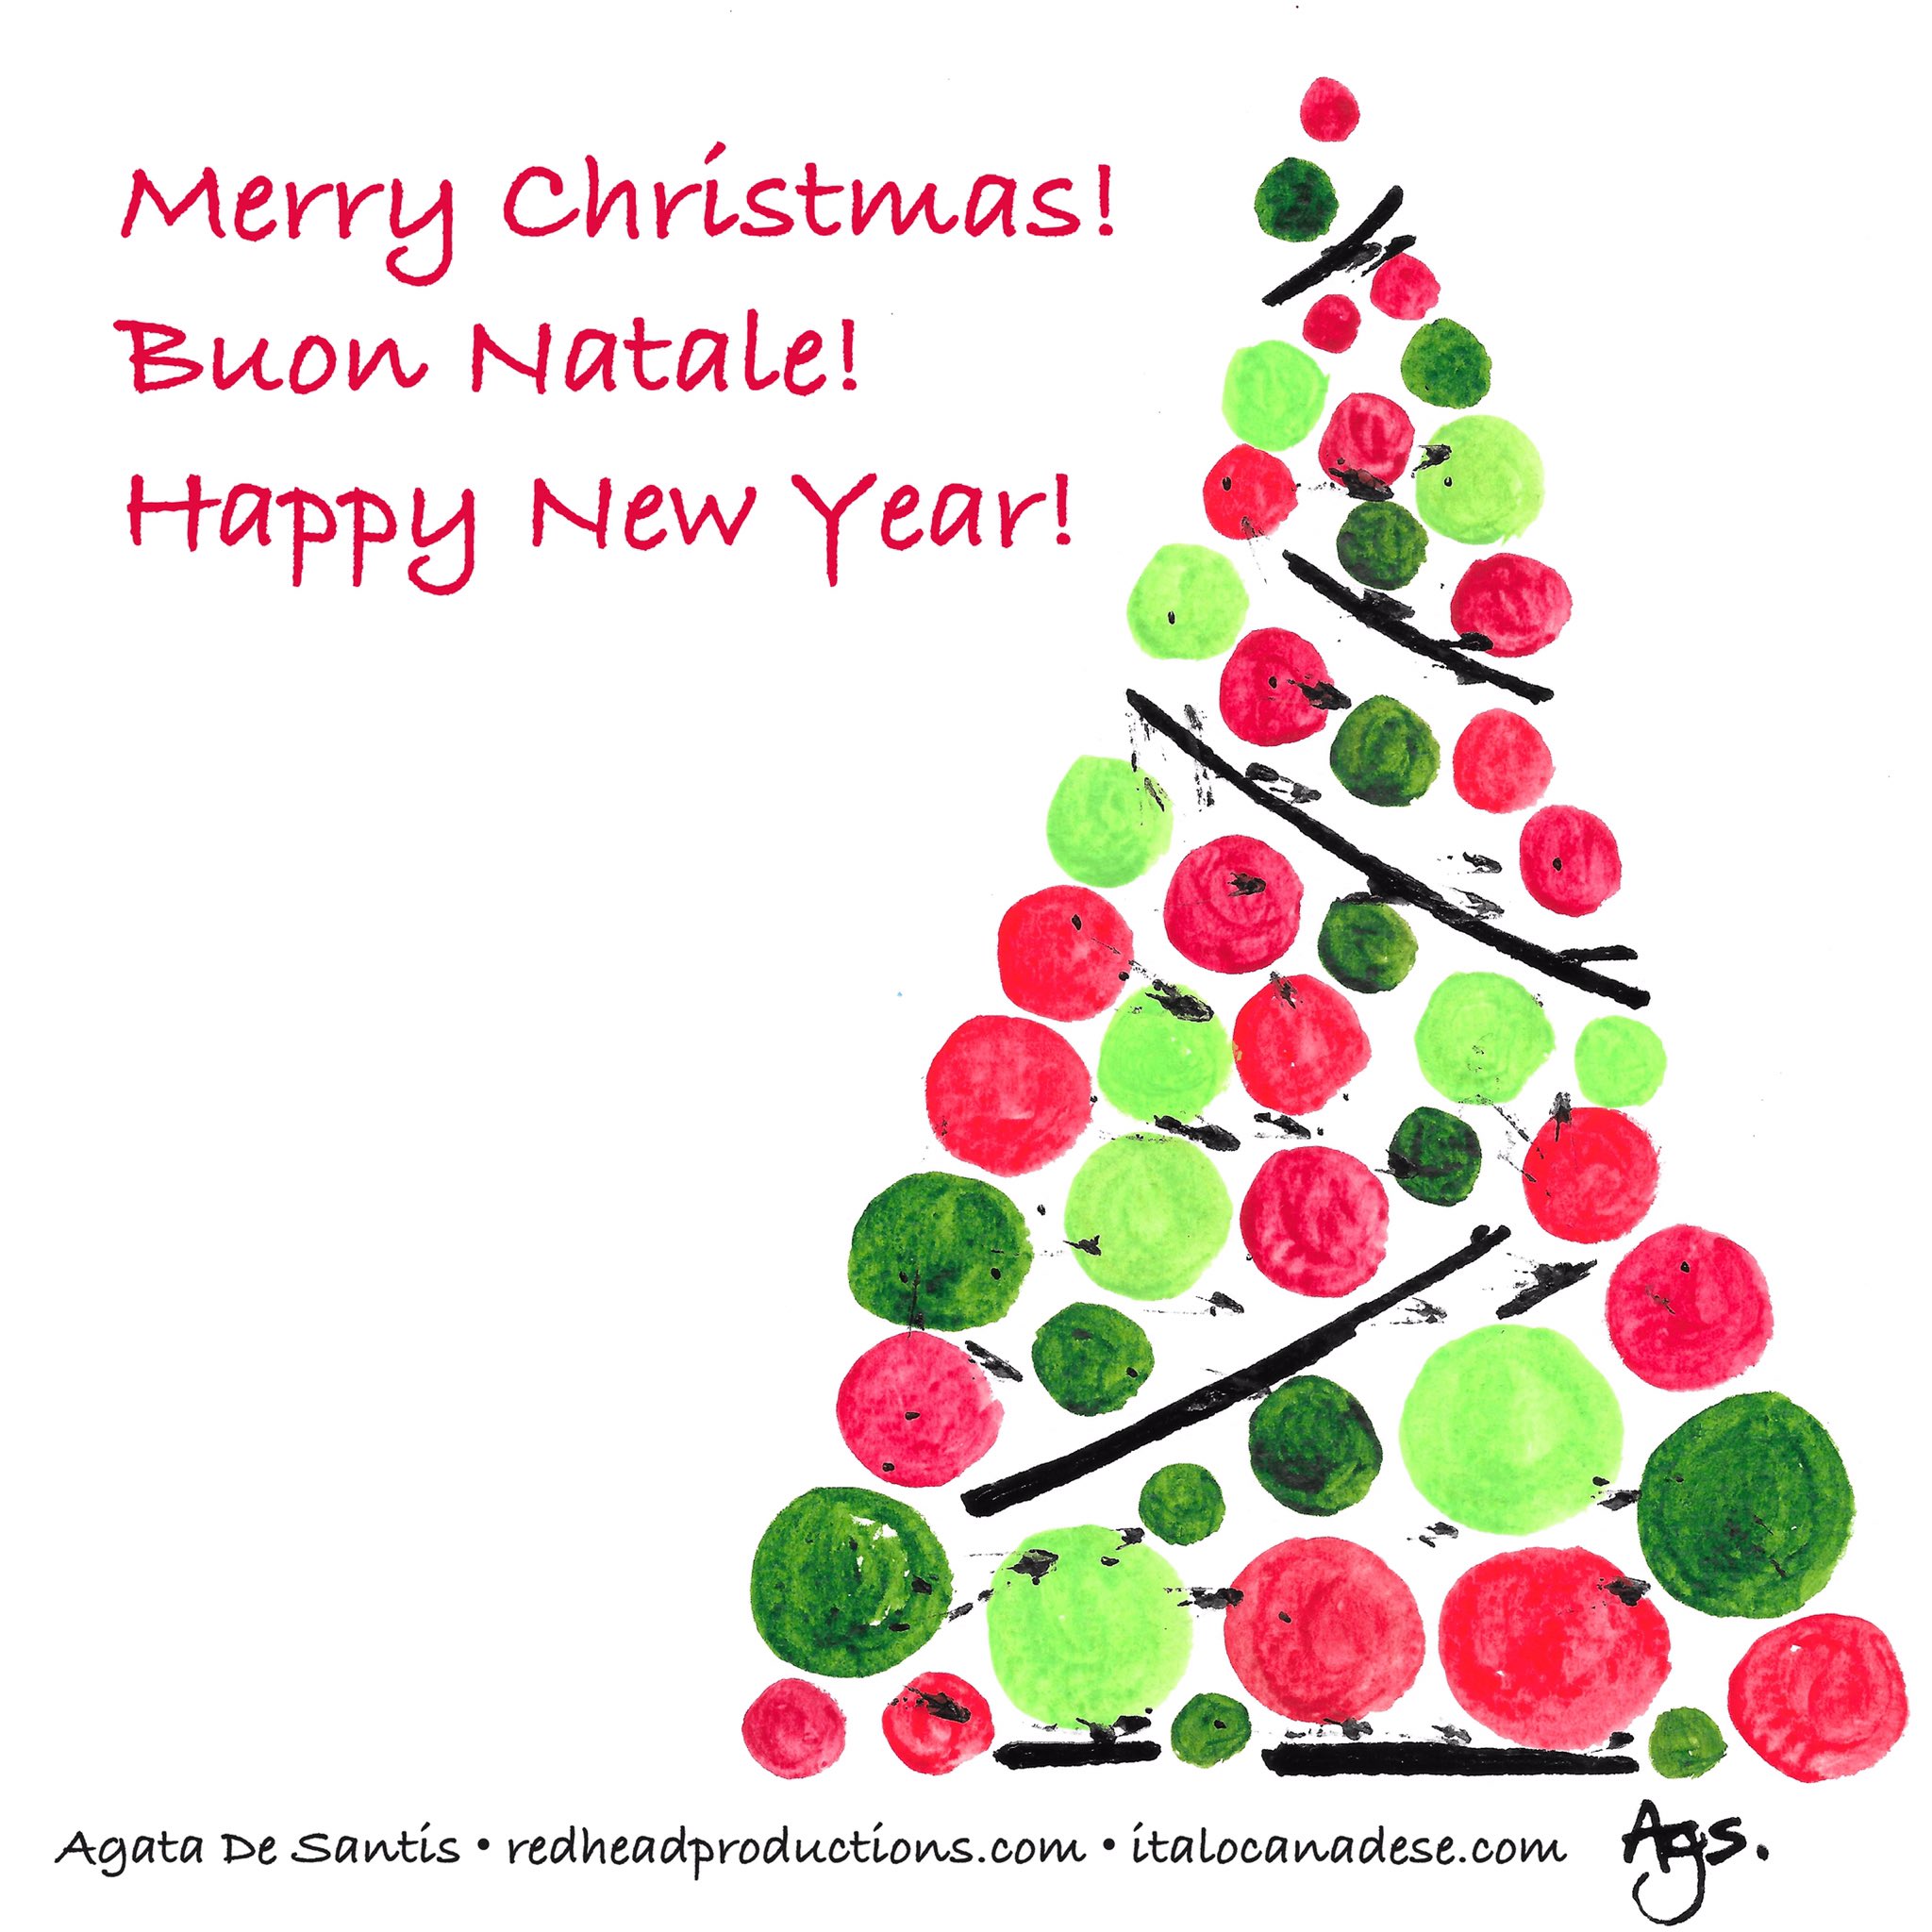 Buon Natale Happy New Year.Italocanadese Com On Twitter Merry Christmas Buon Natale Happy New Year